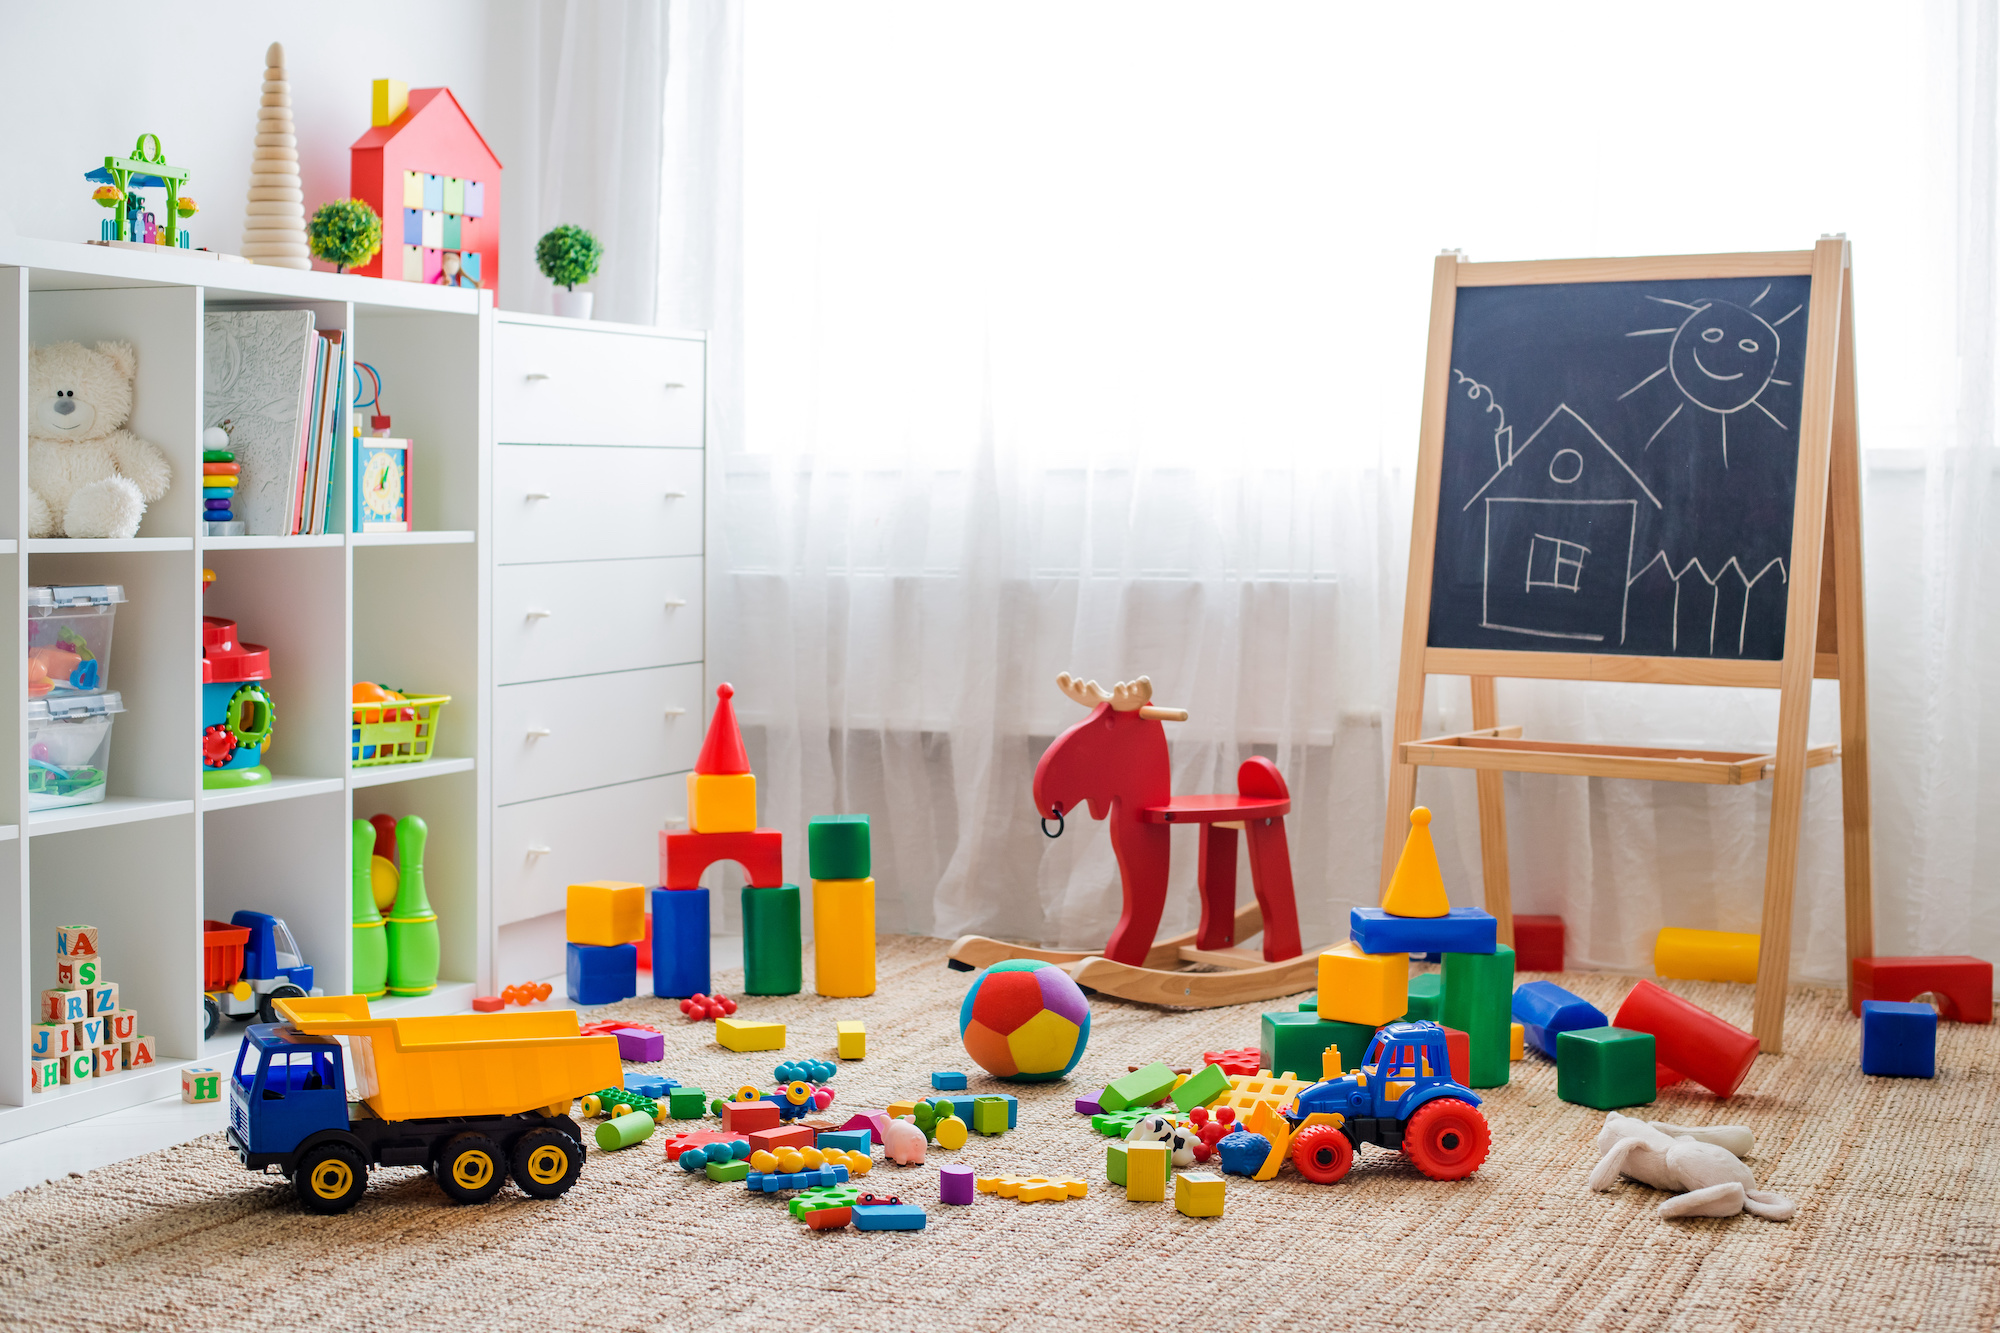 Jak przechowywać zabawki w pokoju dziecięcym? Sprawdzone porady!